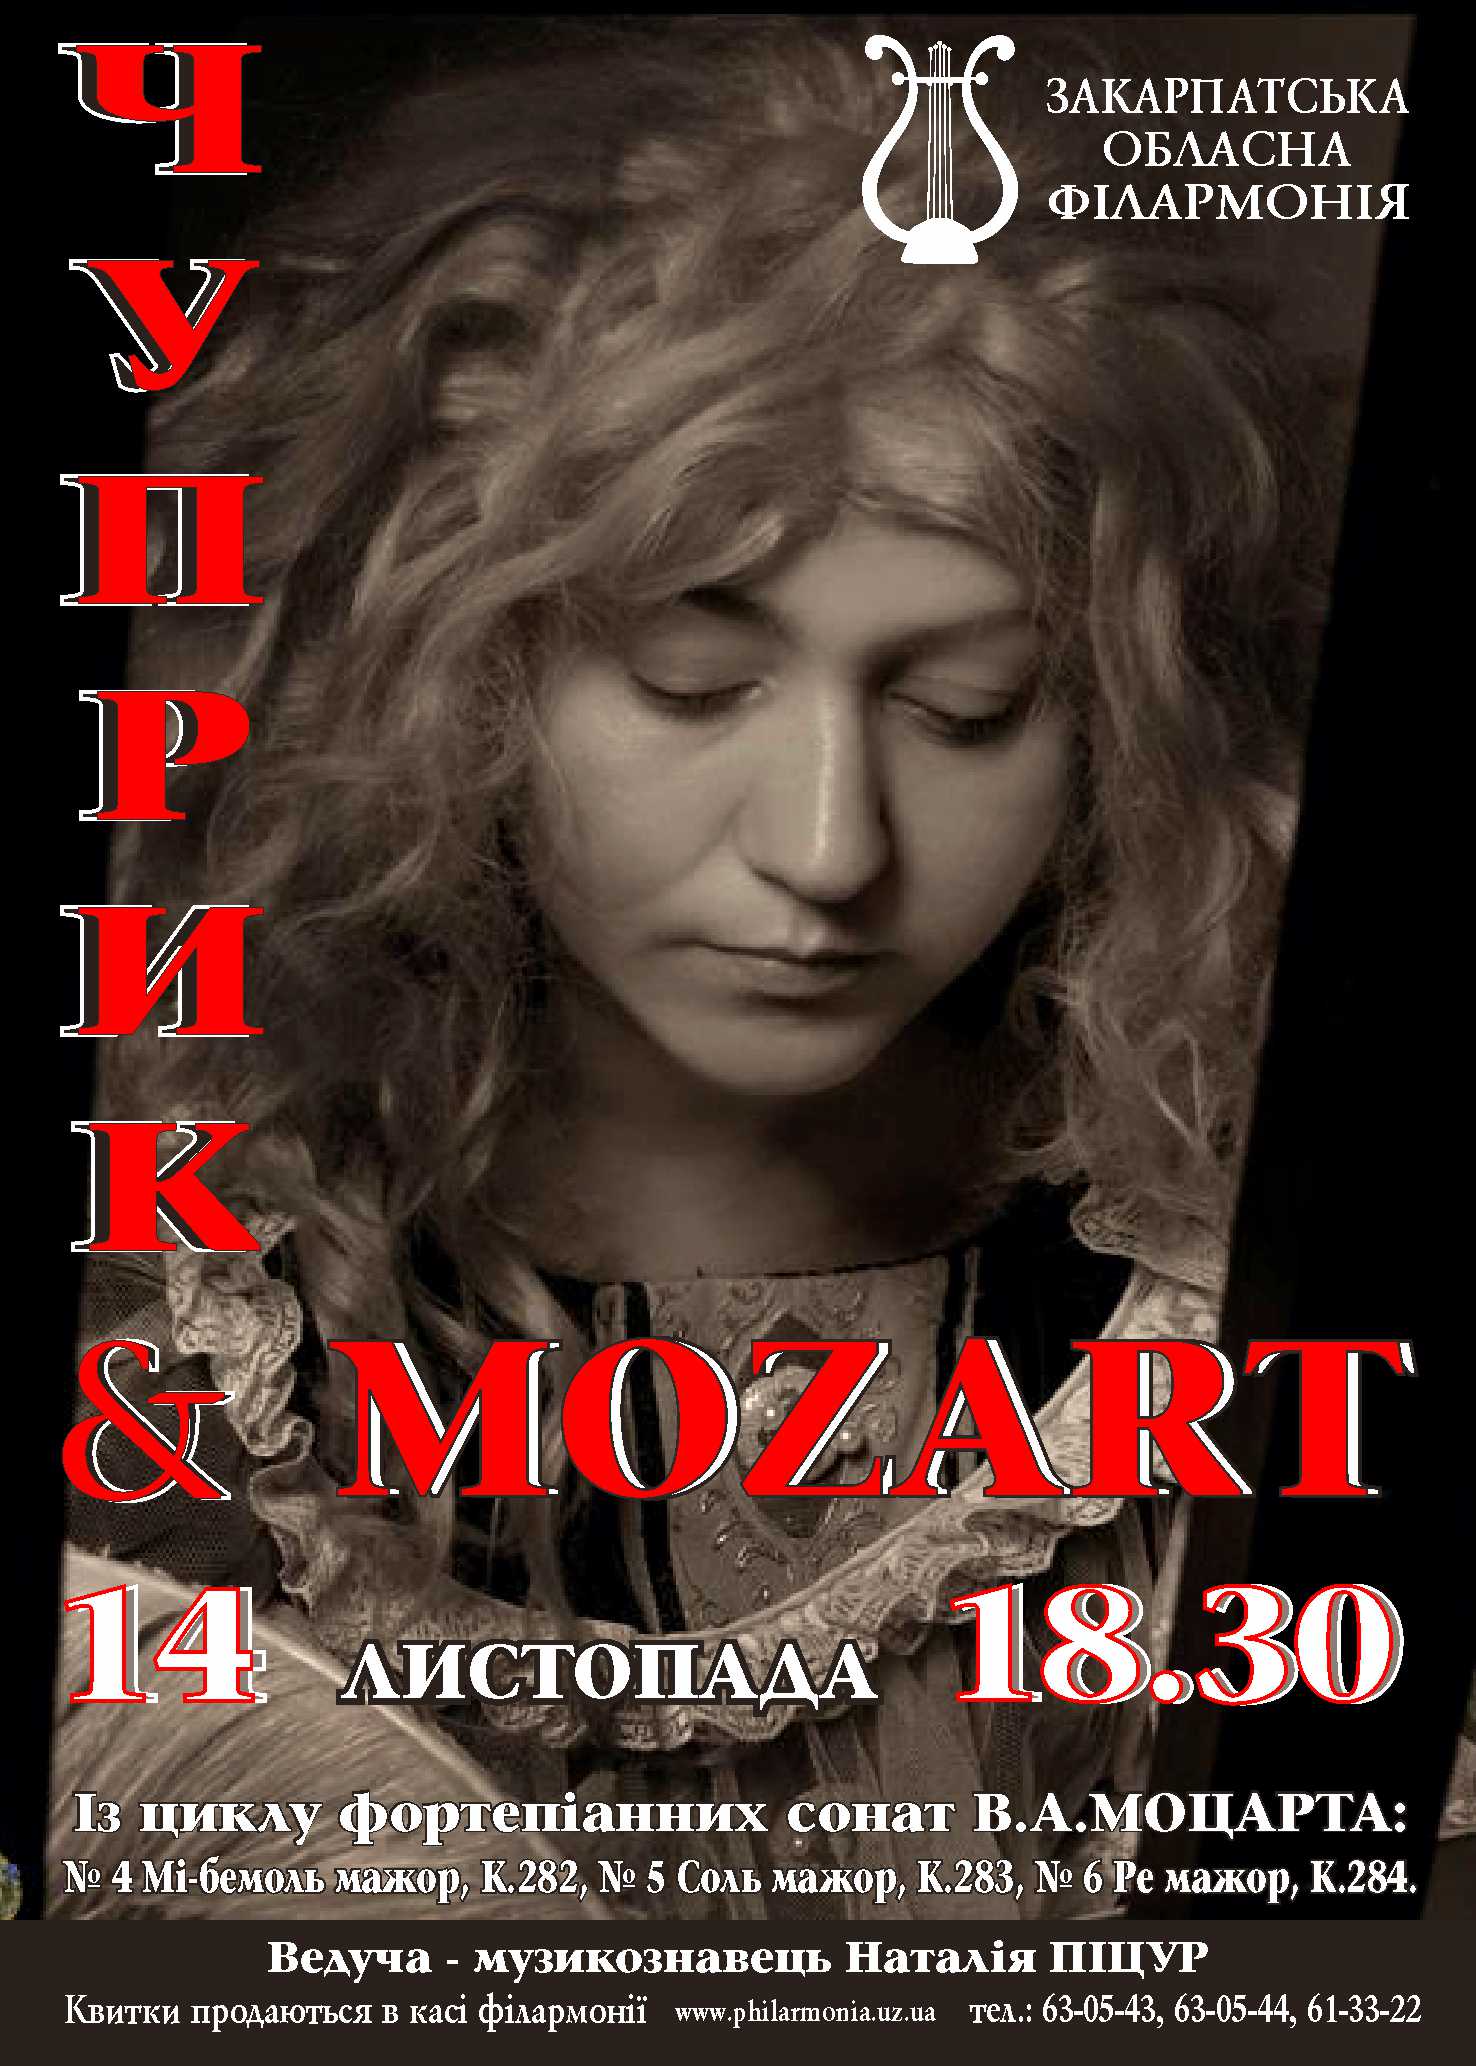 Етелла Чуприк виконає в Ужгороді всі 19 фортепіанних сонат Моцарта